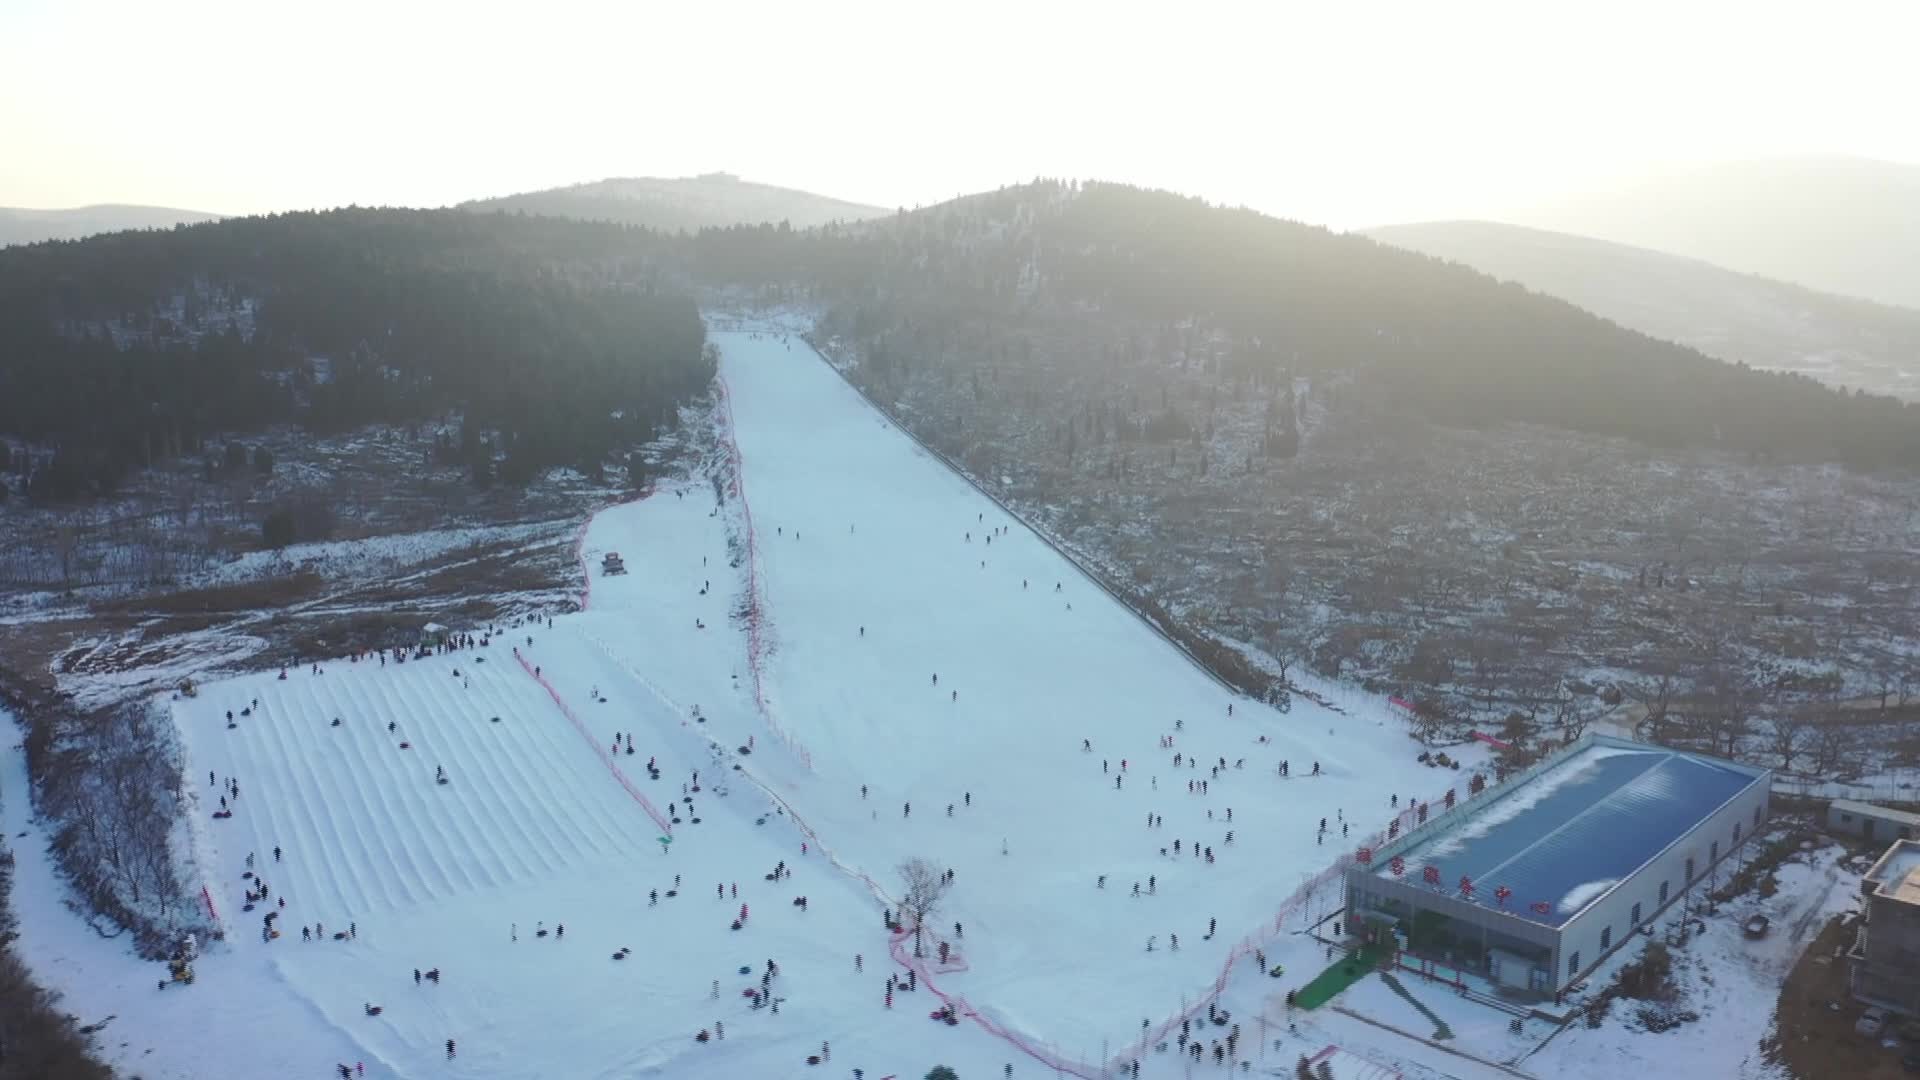 肥城雪山峪滑雪场介绍图片